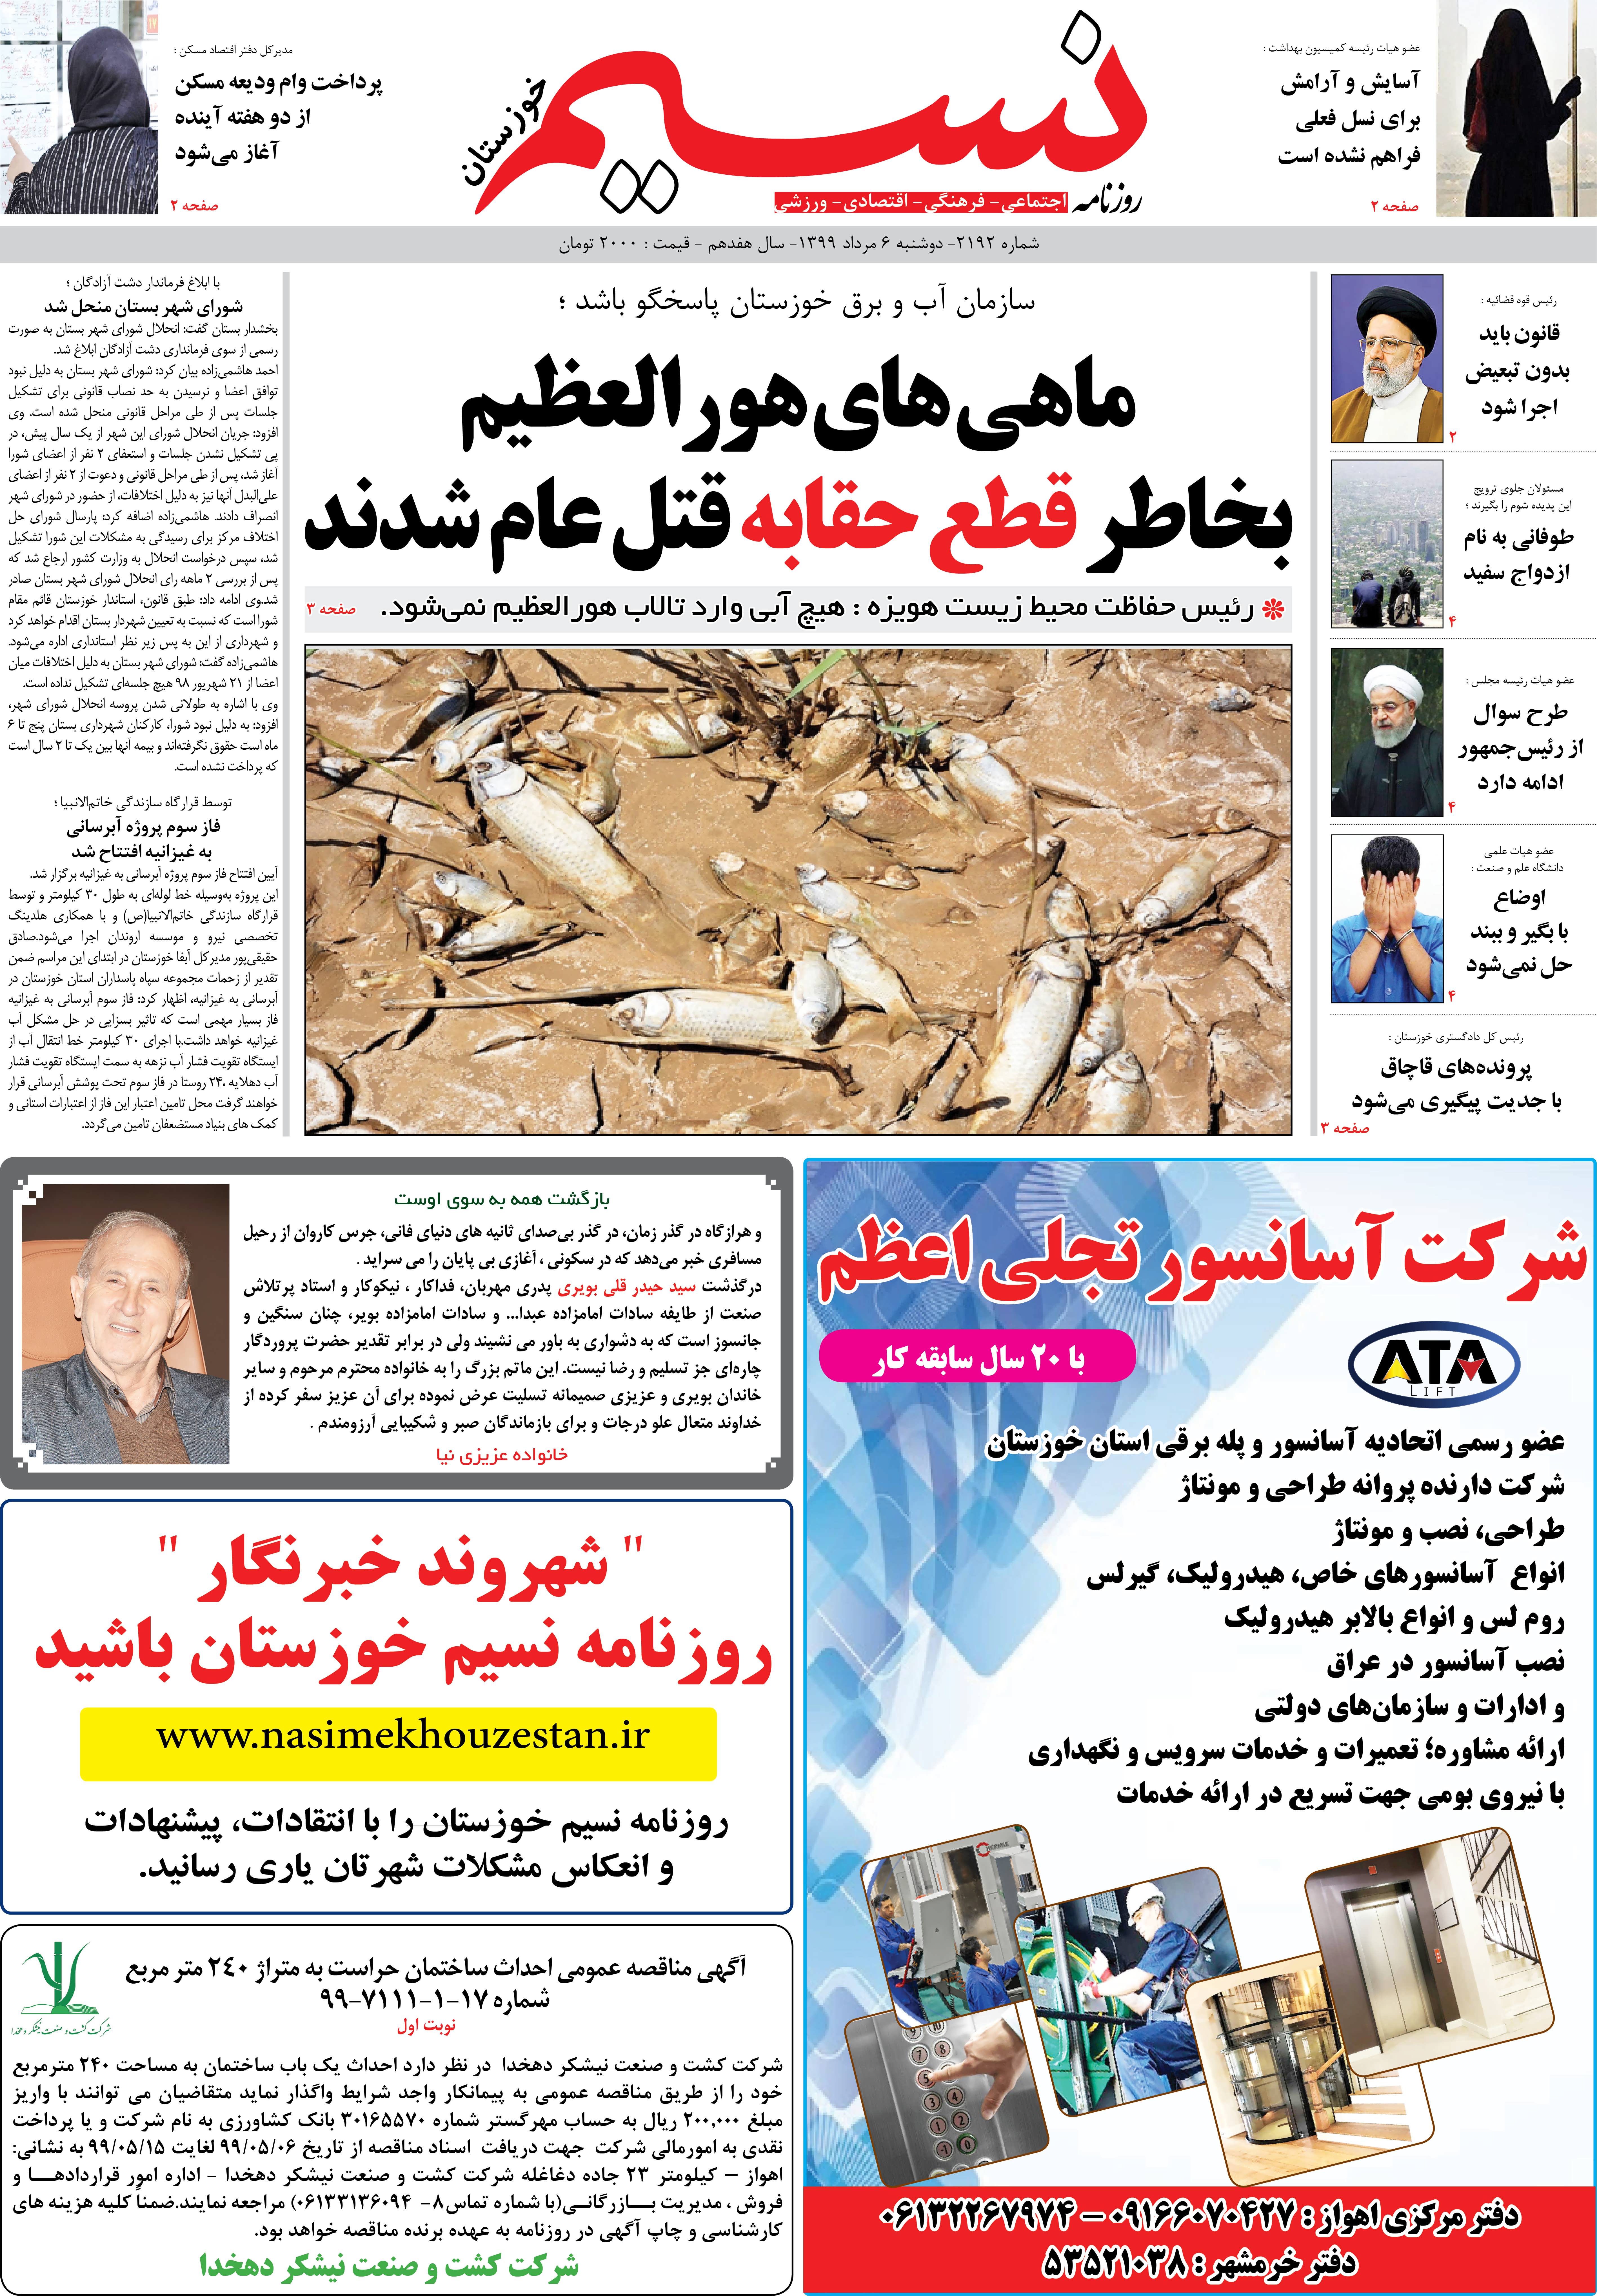 صفحه اصلی روزنامه نسیم شماره 2192 